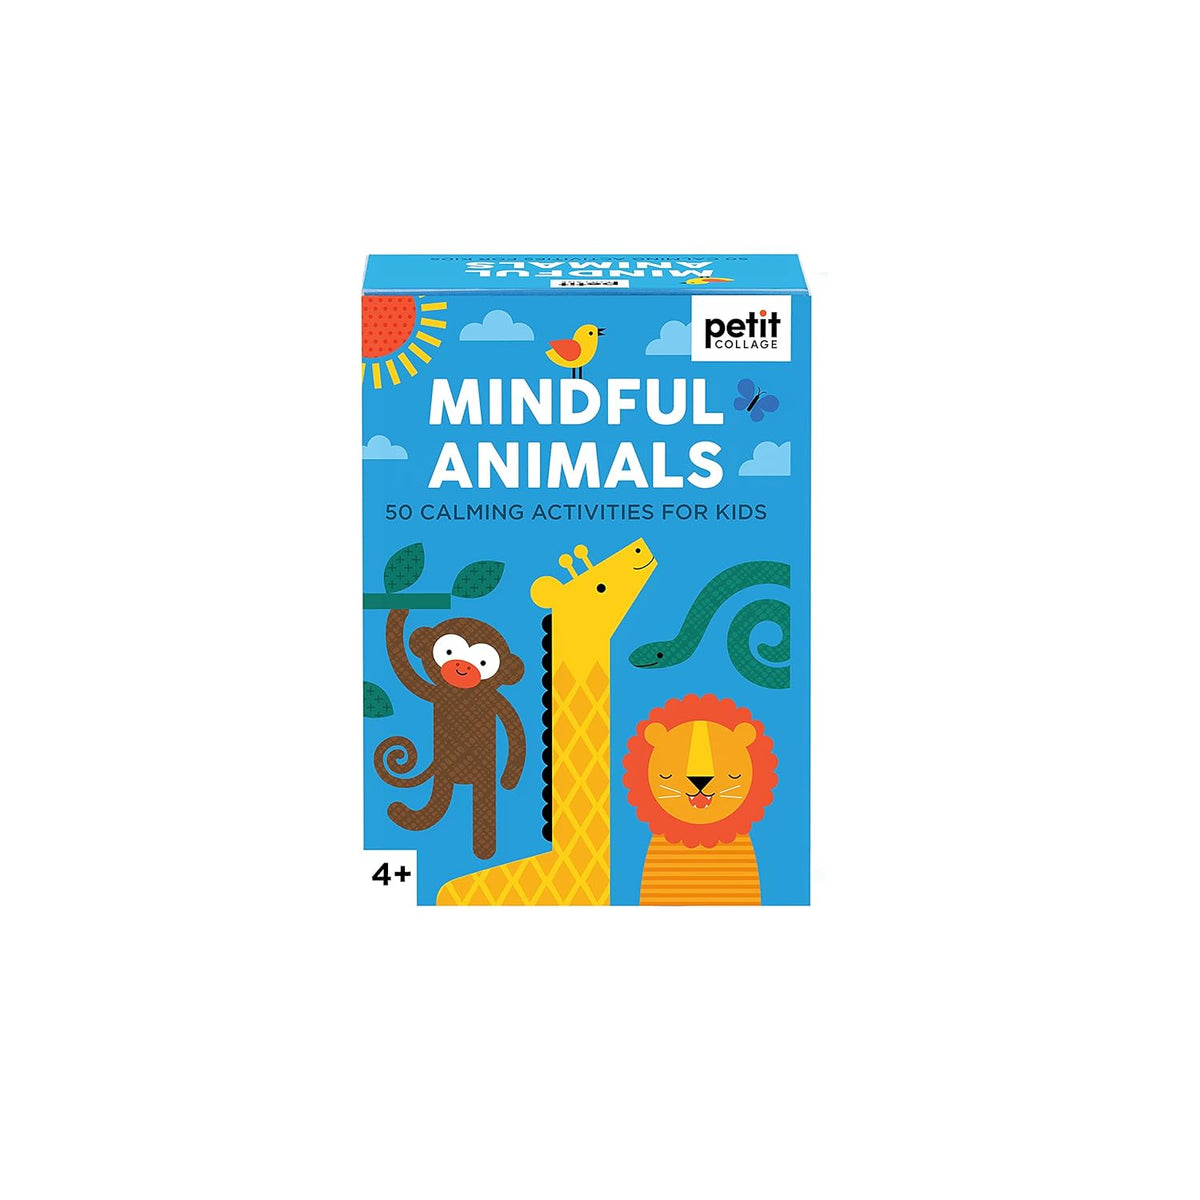 Mindful Animals: 50 Calming Activities